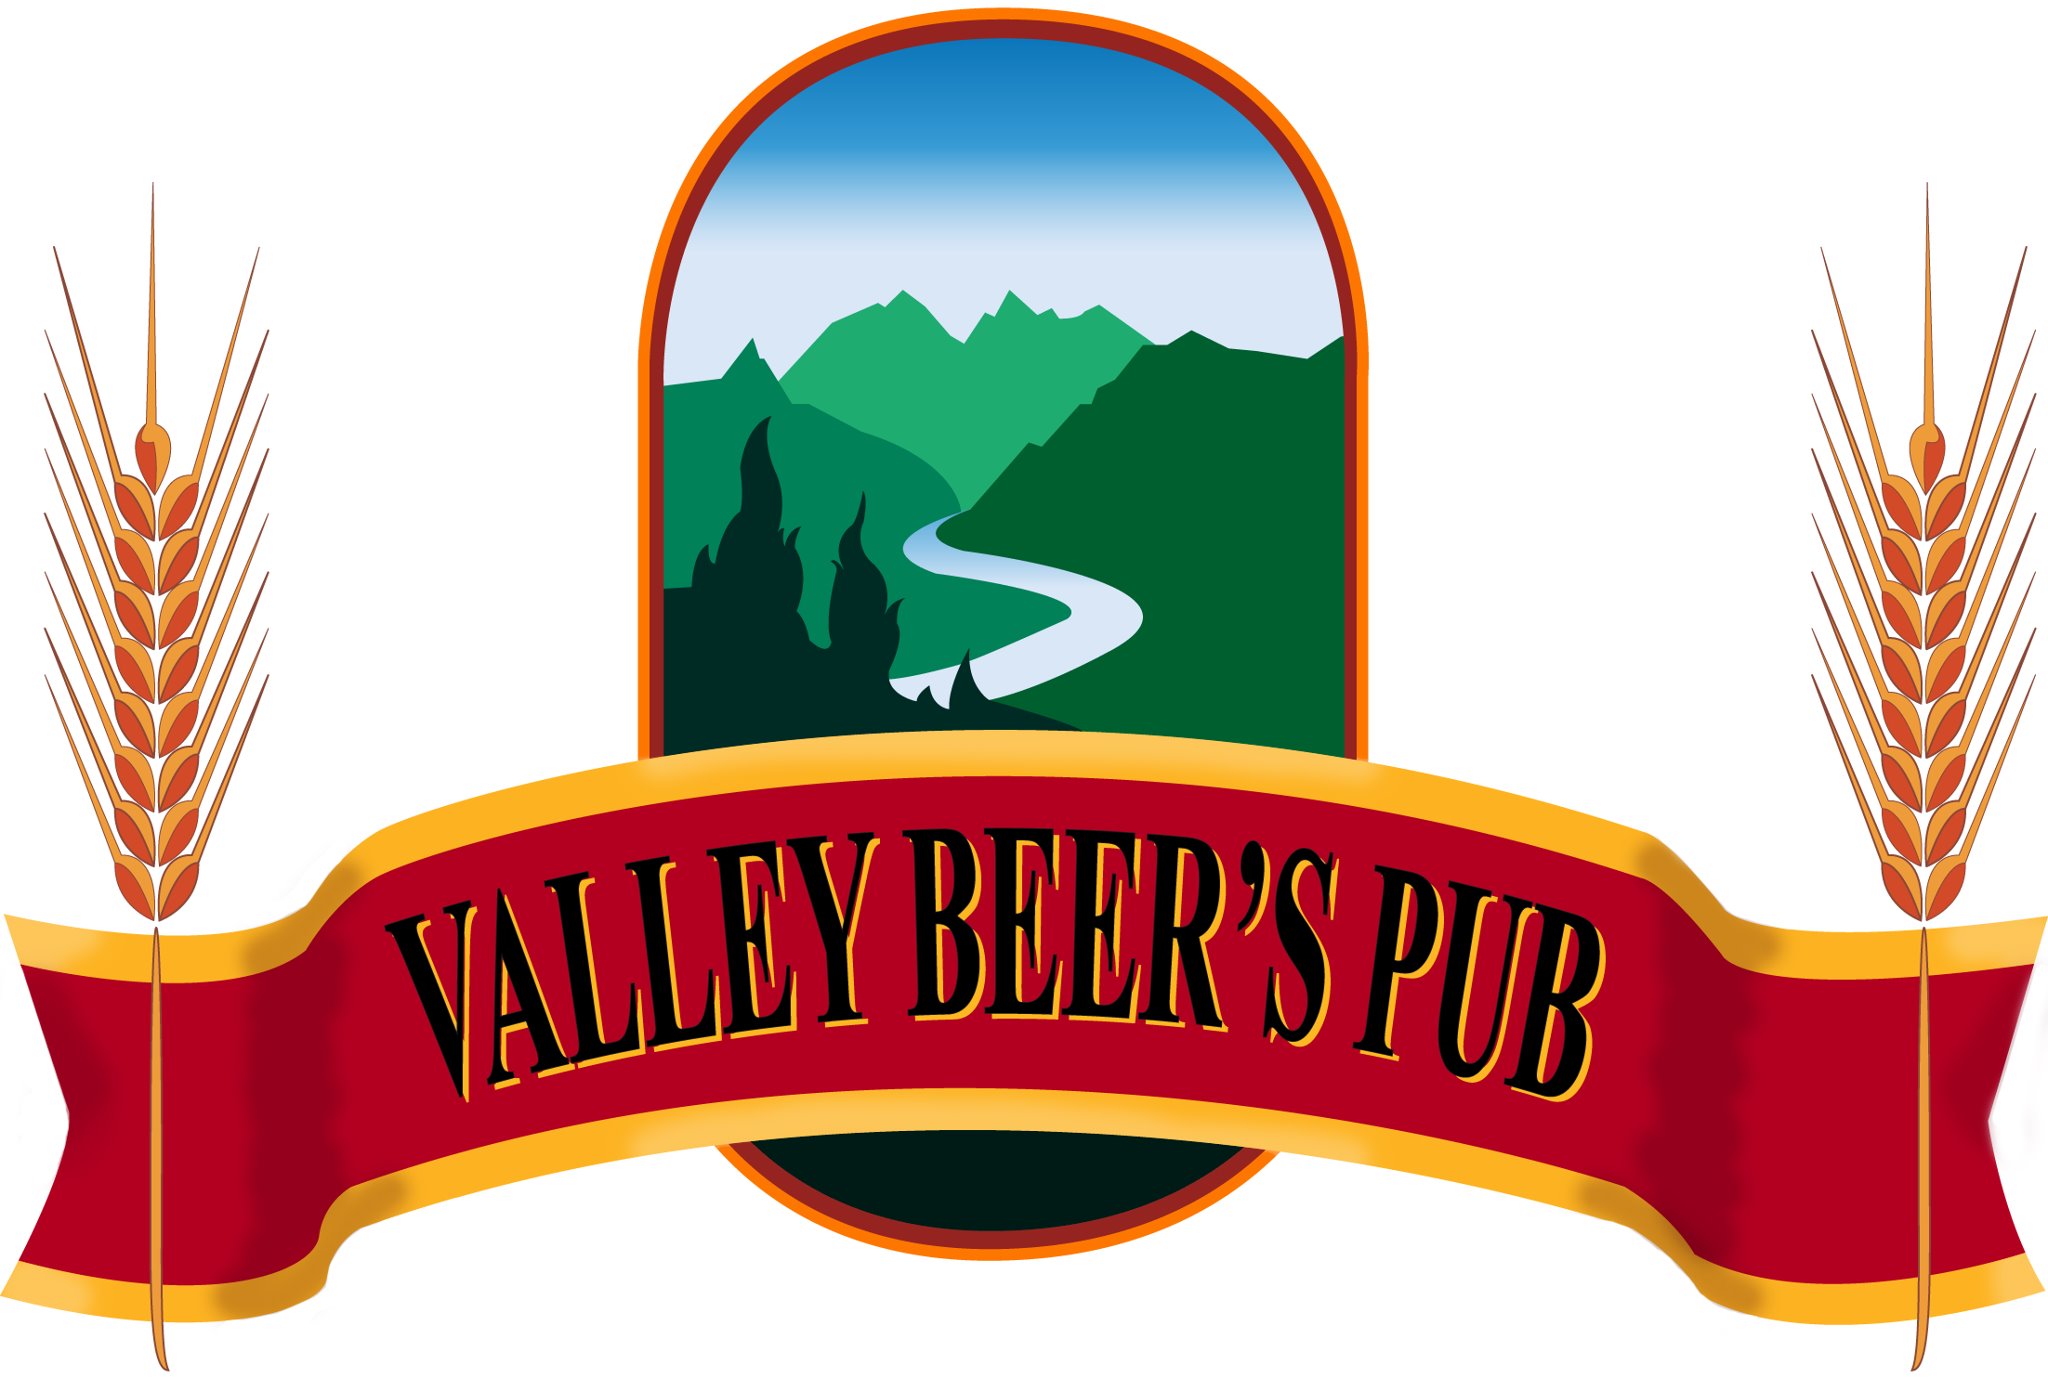 VALLEY BEER'S PUB